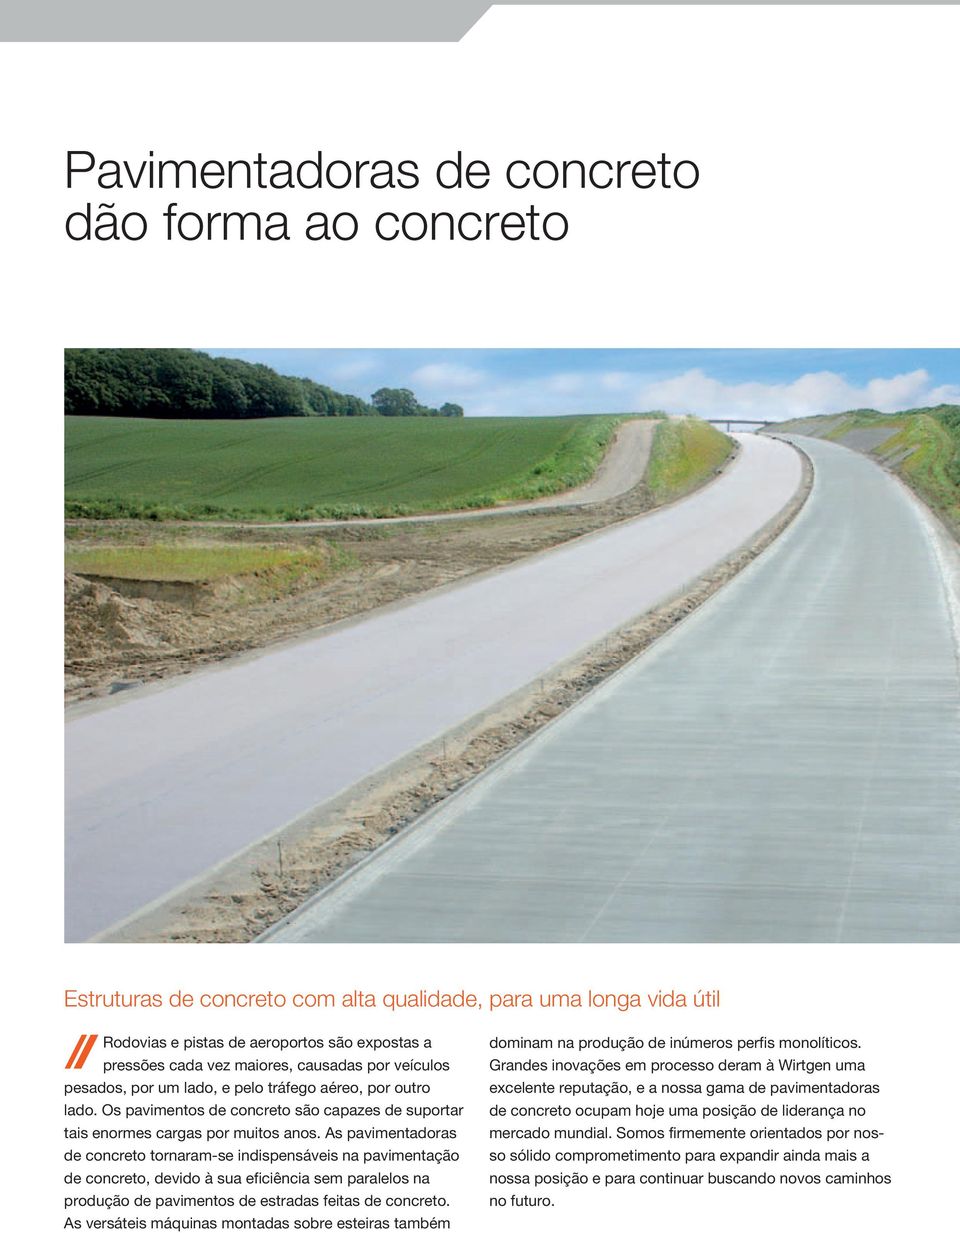 As pavimentadoras de concreto tornaram-se indispensáveis na pavimentação de concreto, devido à sua eficiência sem paralelos na produção de pavimentos de estradas feitas de concreto.